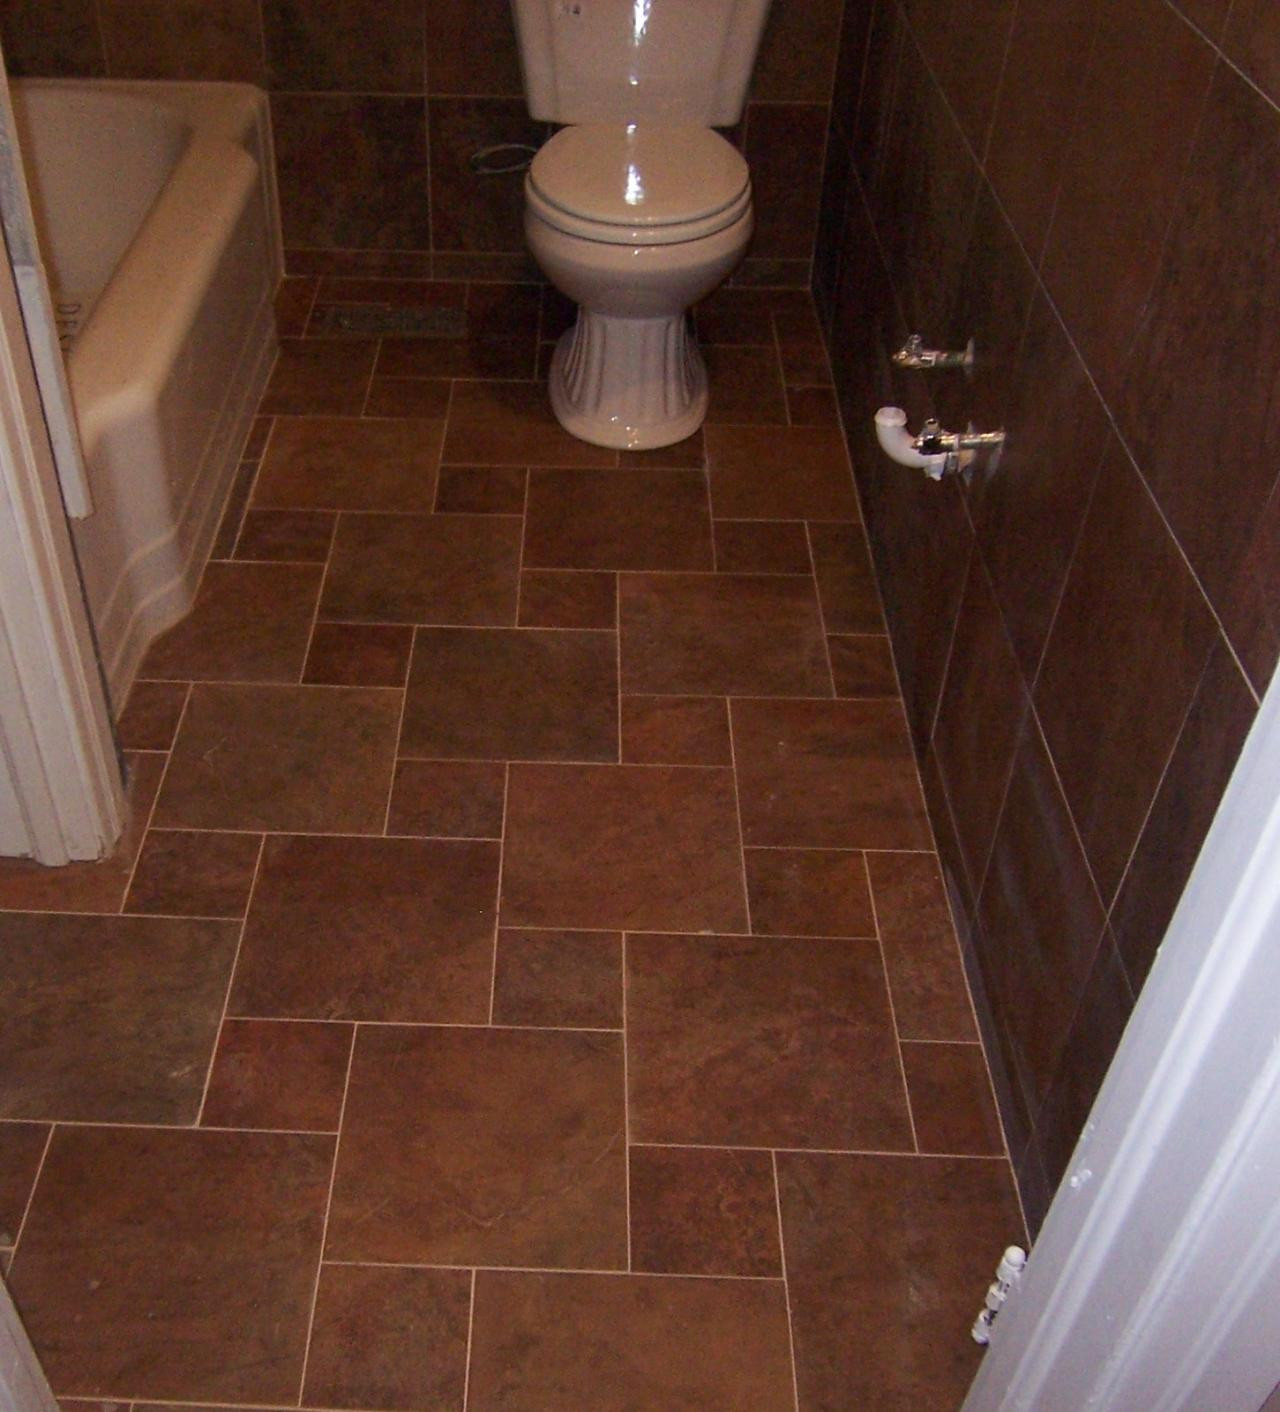 Bathroom Floor Tile Designs
 A Safe Bathroom Floor Tile Ideas for Safe and Healthy